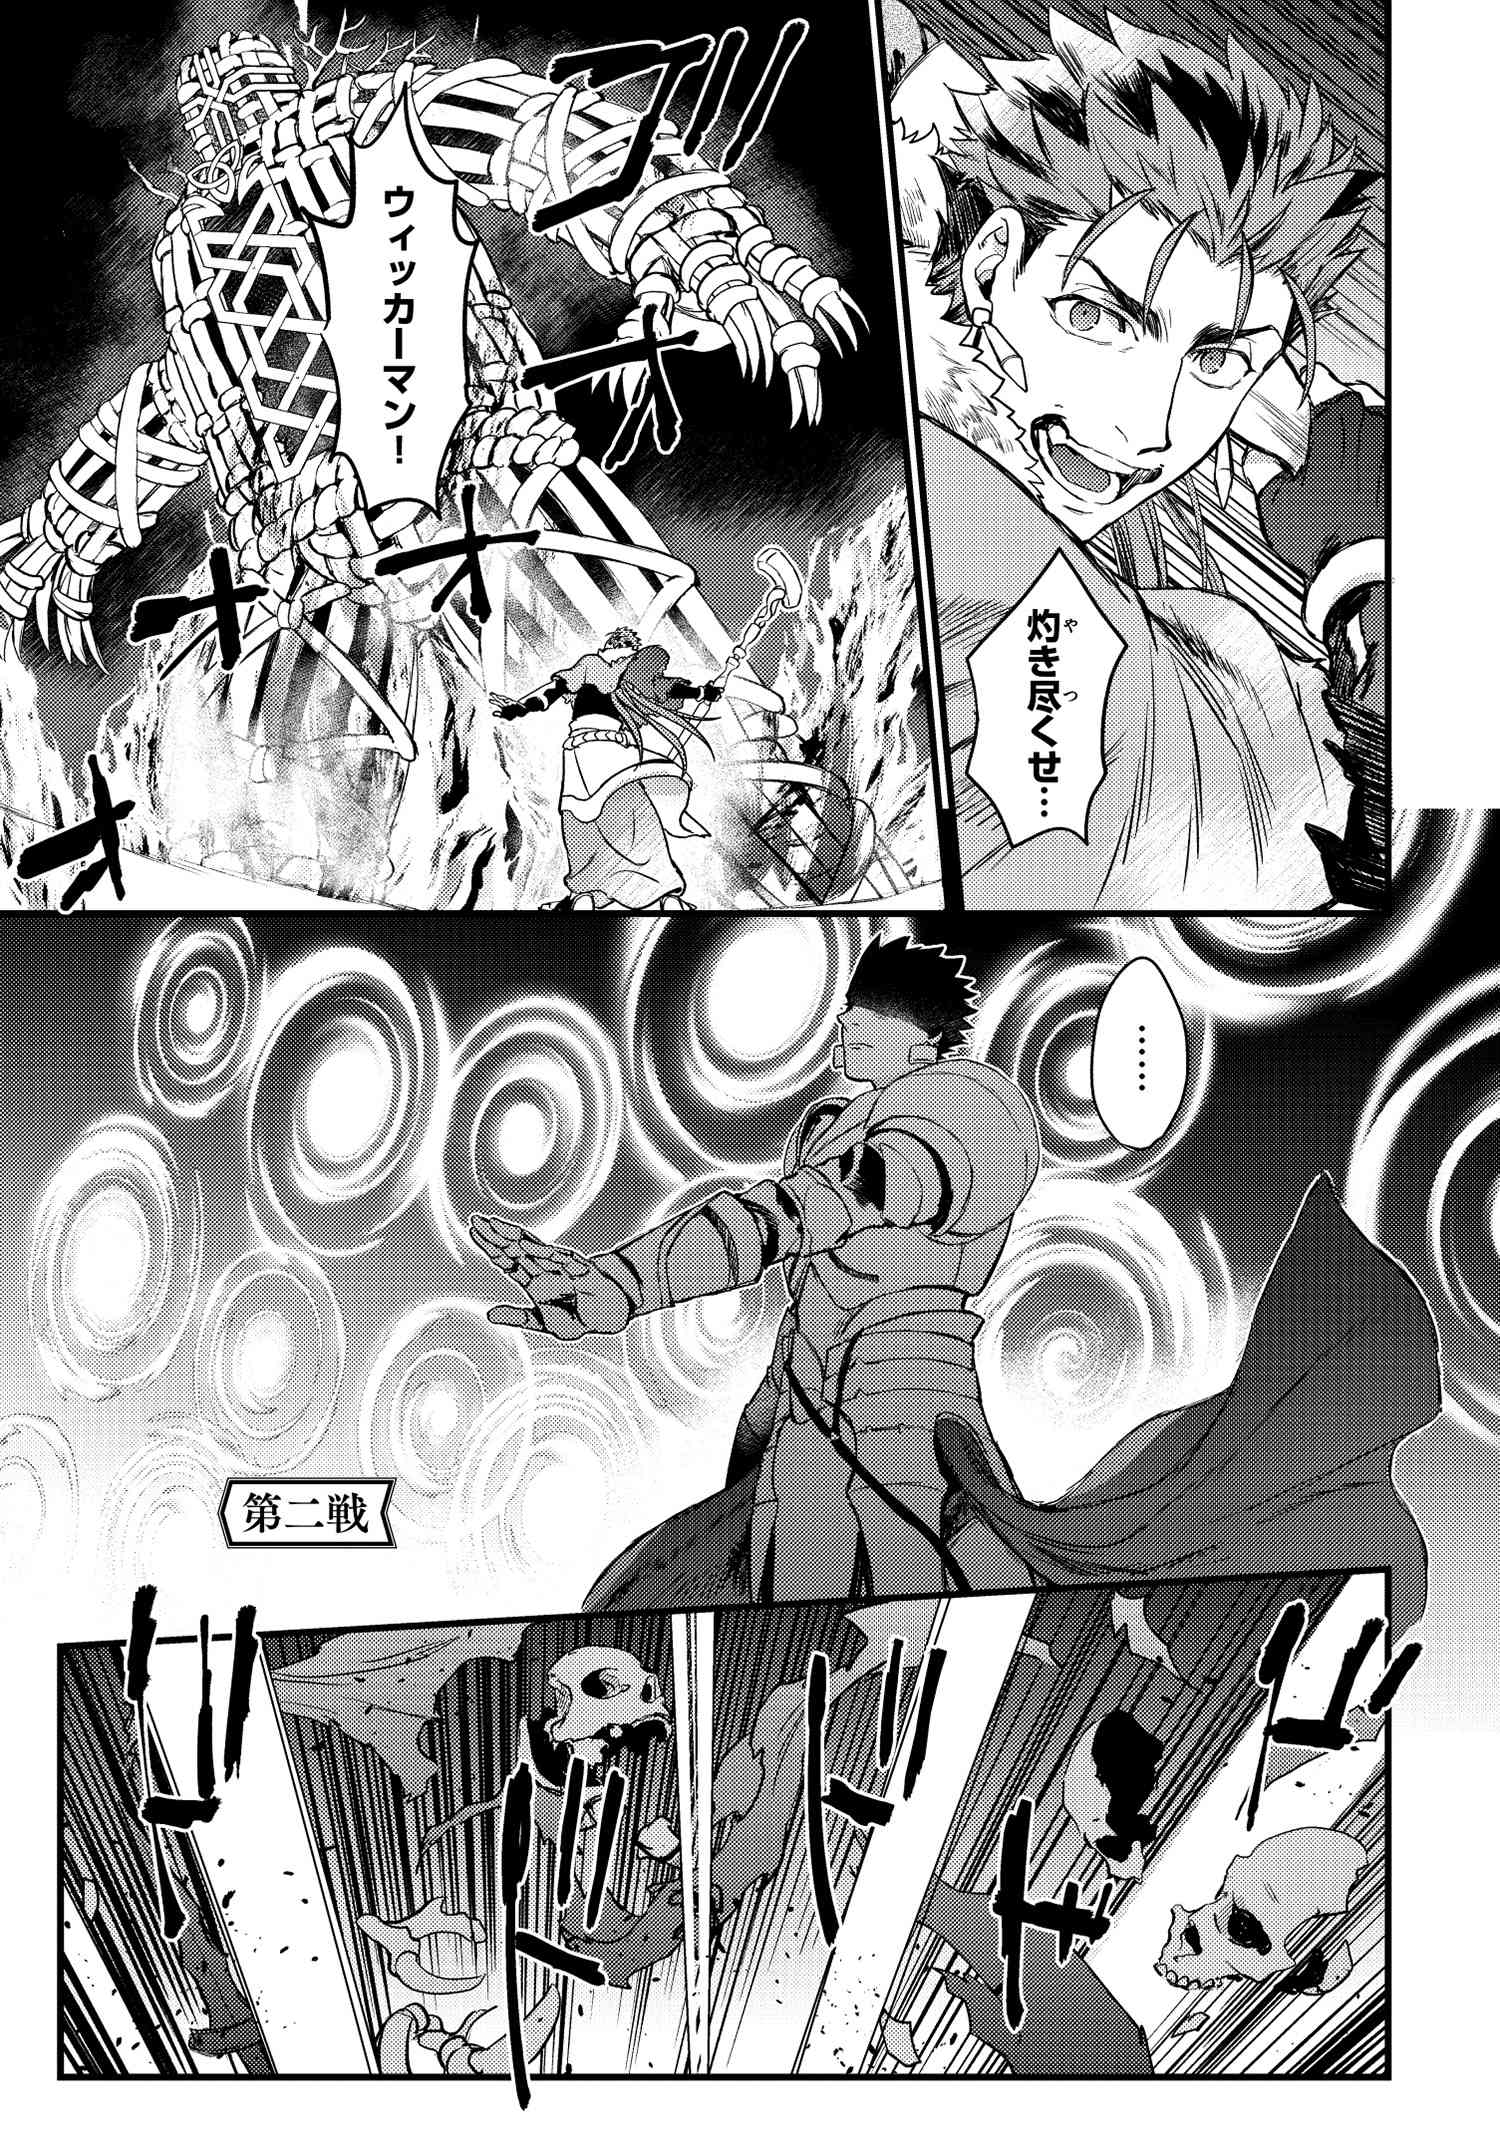 Fate Grand Order コミックアラカルト Plus Sp 対決編 第二戦 漫画 スーイチ Type Moonコミックエース 無料で漫画が読めるオンラインマガジン